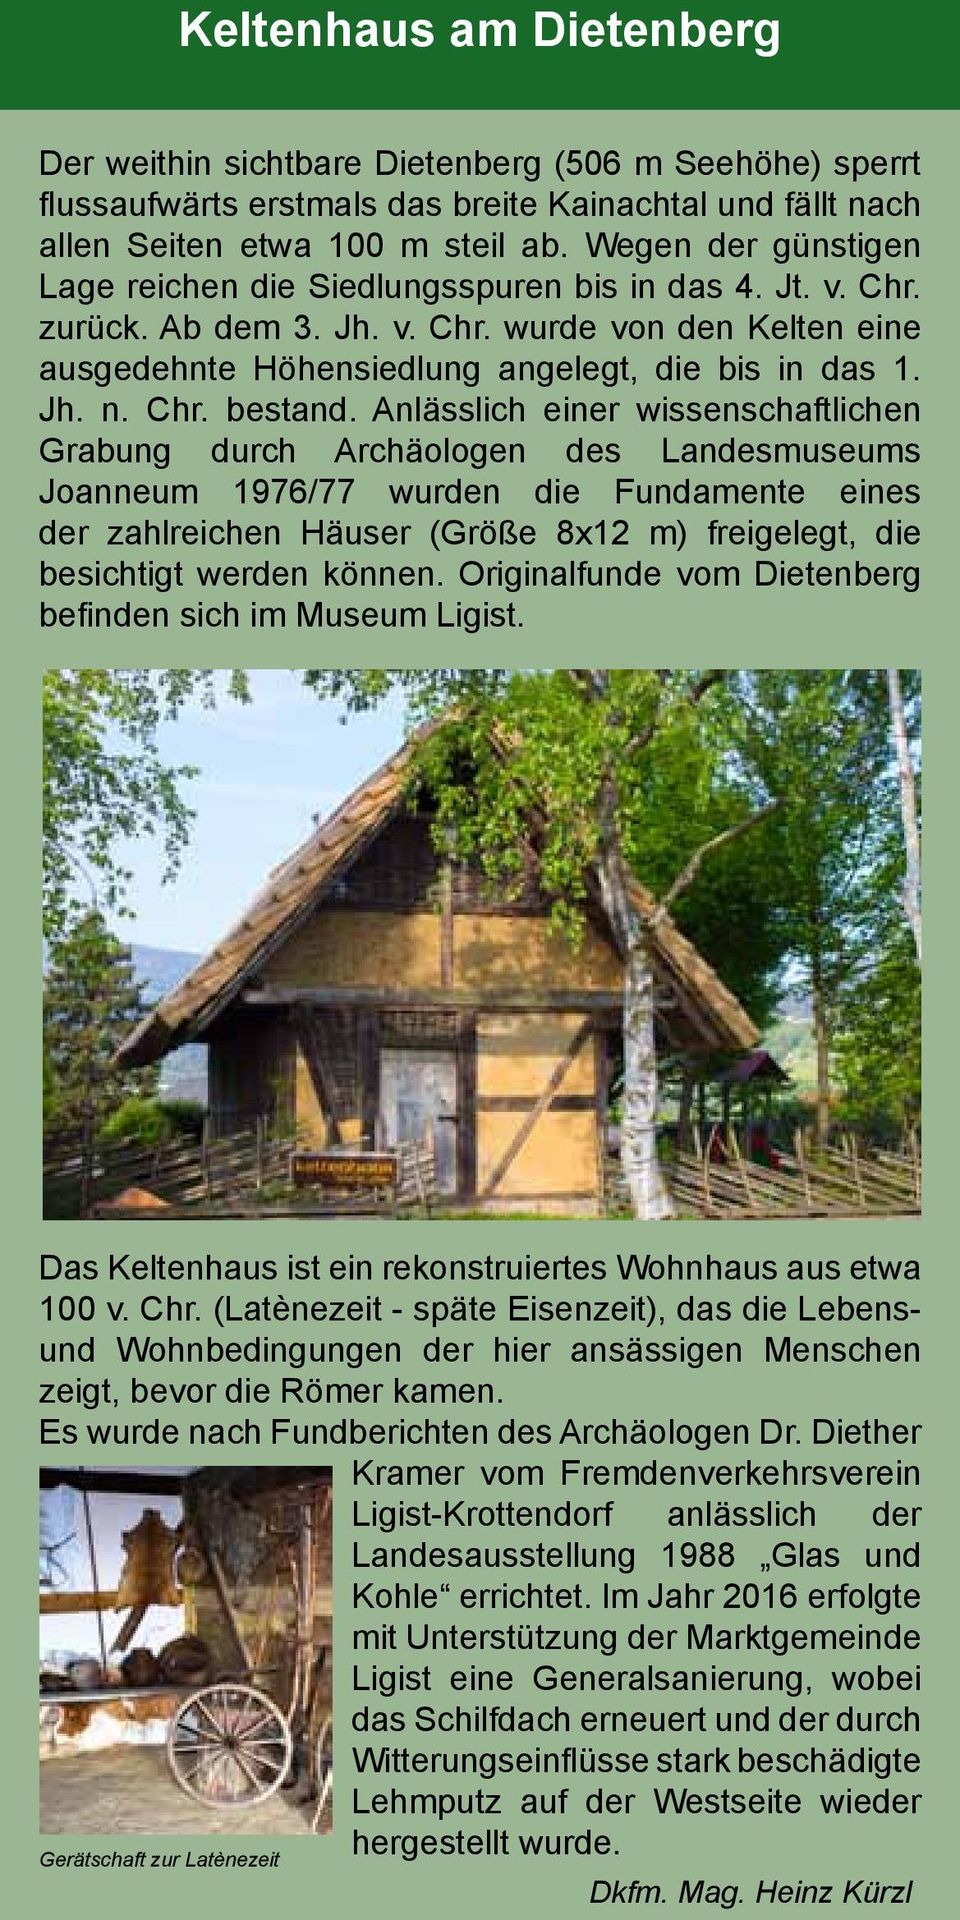 Anlässlich einer wissenschaftlichen Grabung durch Archäologen des Landesmuseums Joanneum 1976/77 wurden die Fundamente eines der zahlreichen Häuser (Größe 8x12 m) freigelegt, die besichtigt werden